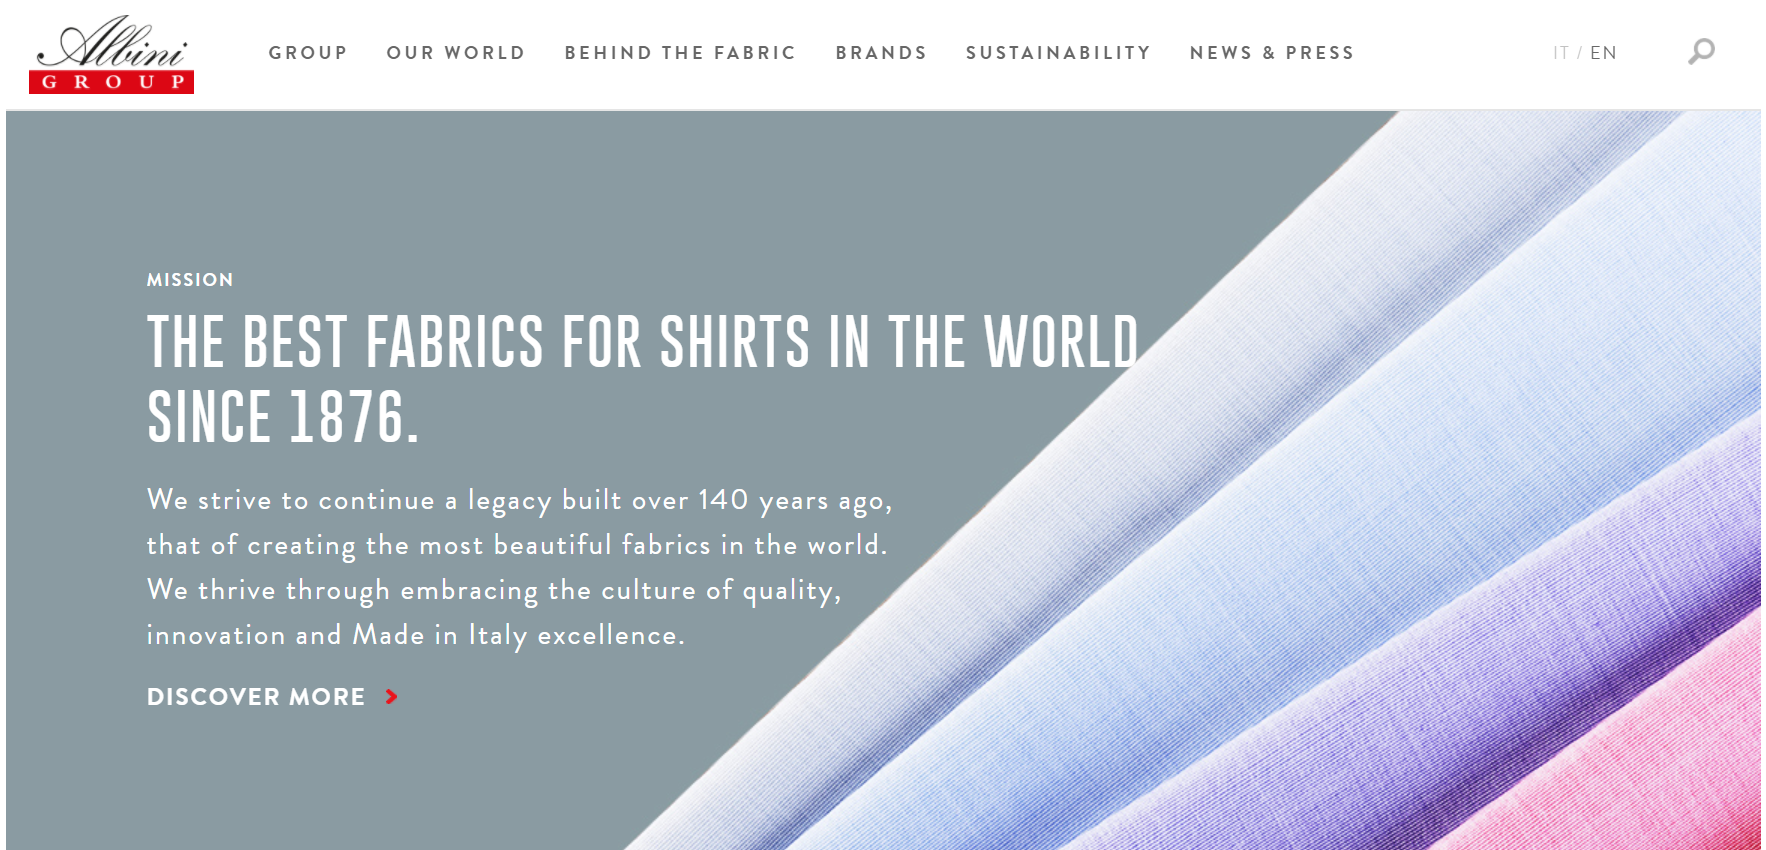 意大利衬衫面料厂商 Gruppo Albini 2018年盈利大涨50%，表现为过去三年最佳